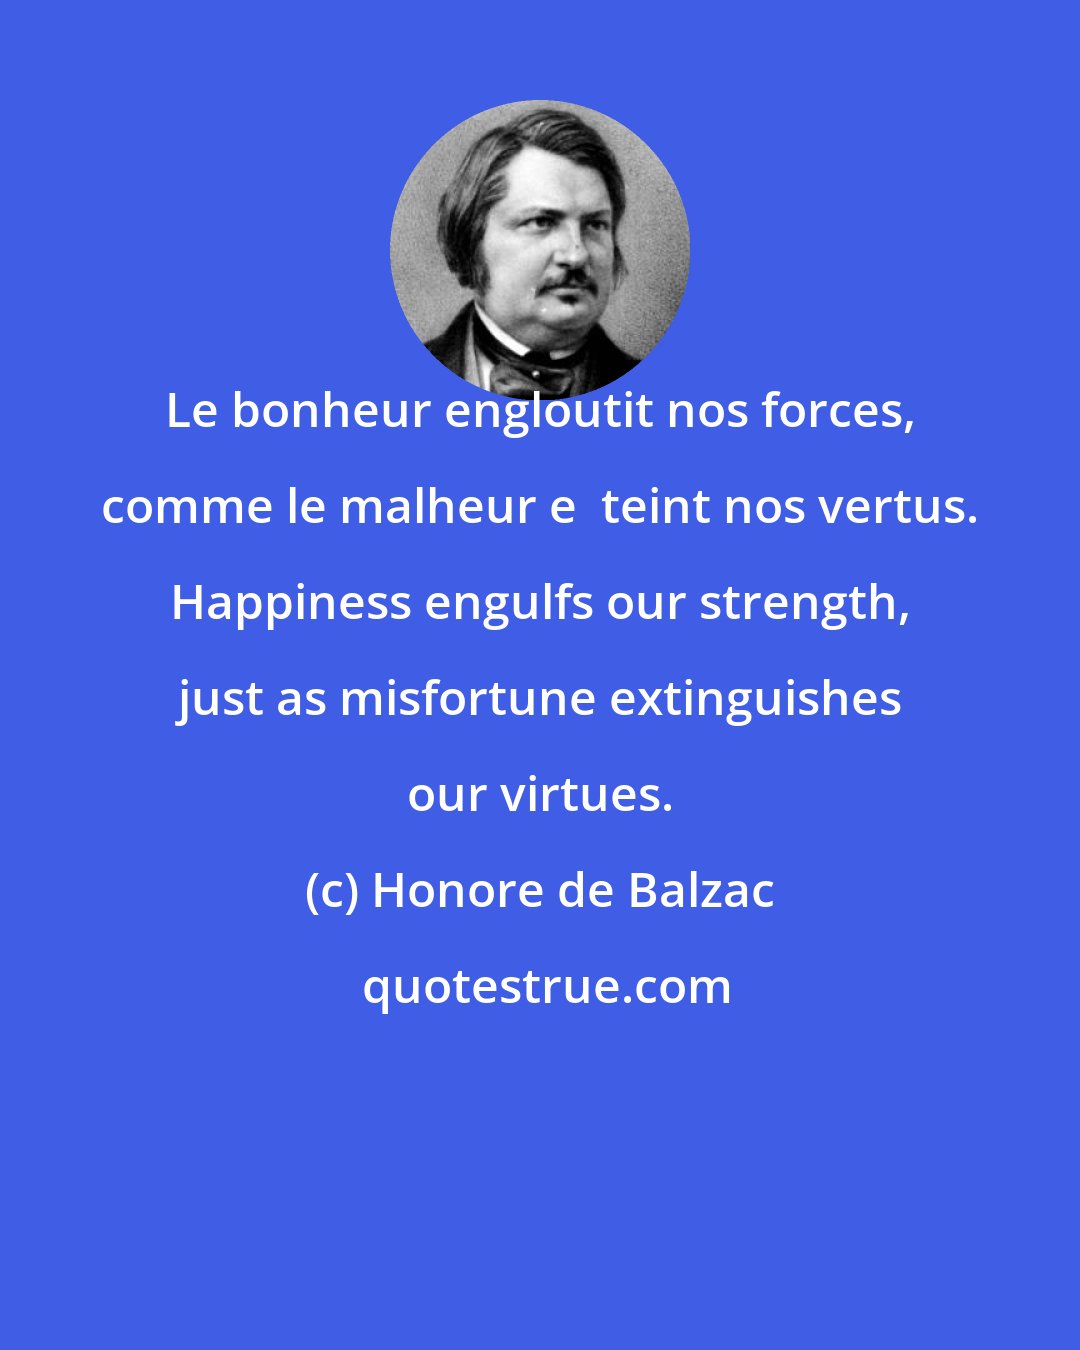 Honore de Balzac: Le bonheur engloutit nos forces, comme le malheur e  teint nos vertus. Happiness engulfs our strength, just as misfortune extinguishes our virtues.